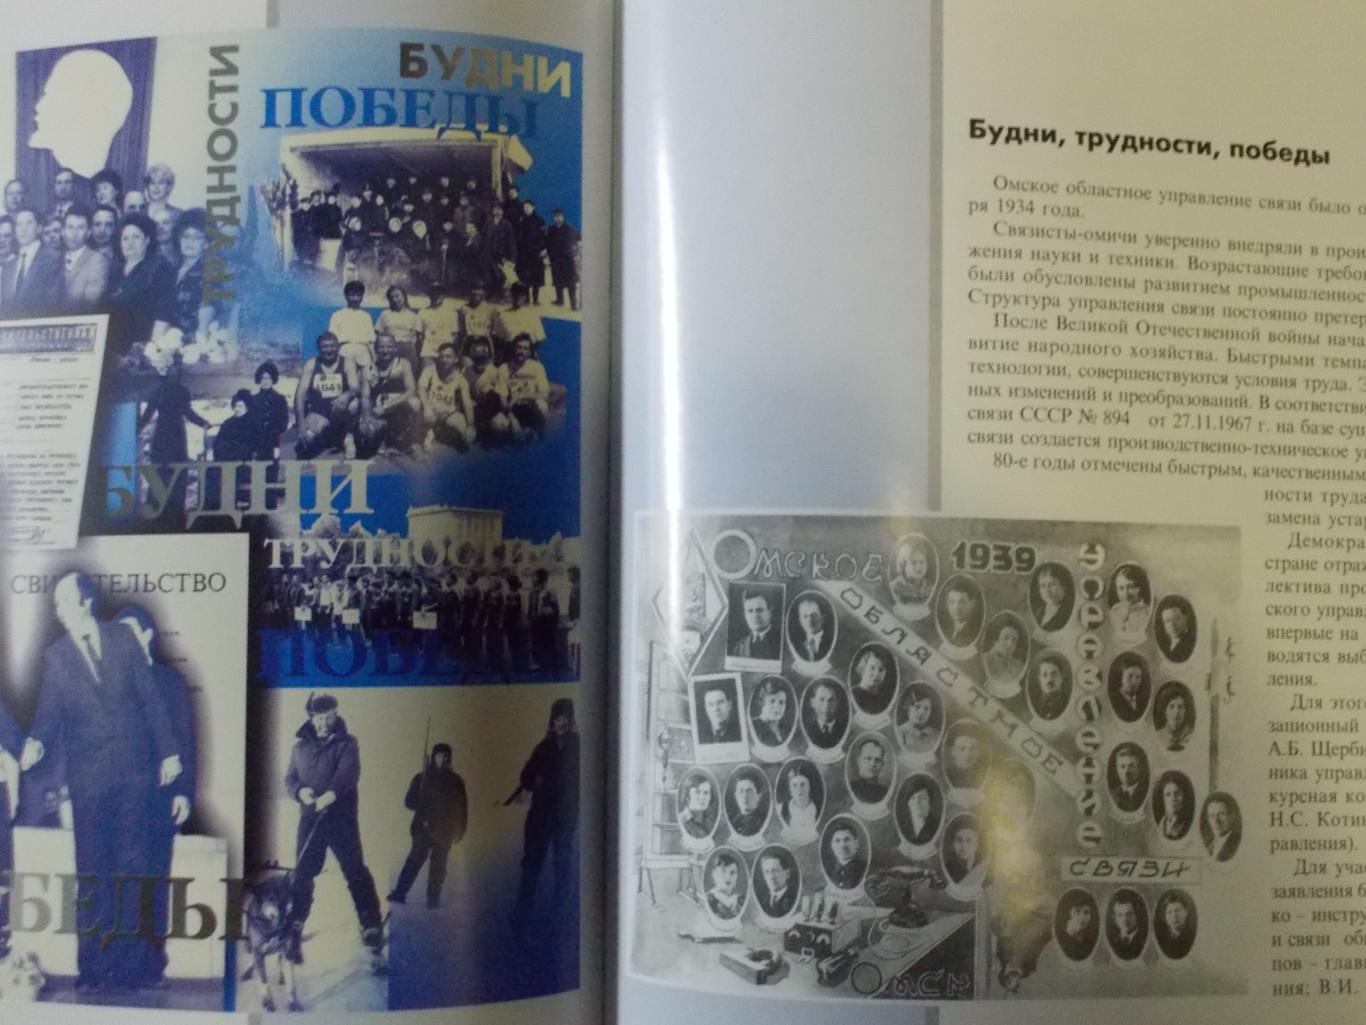 Книга На связи Омск, 2002 год издания. Доставка по России за счет продавца. 5